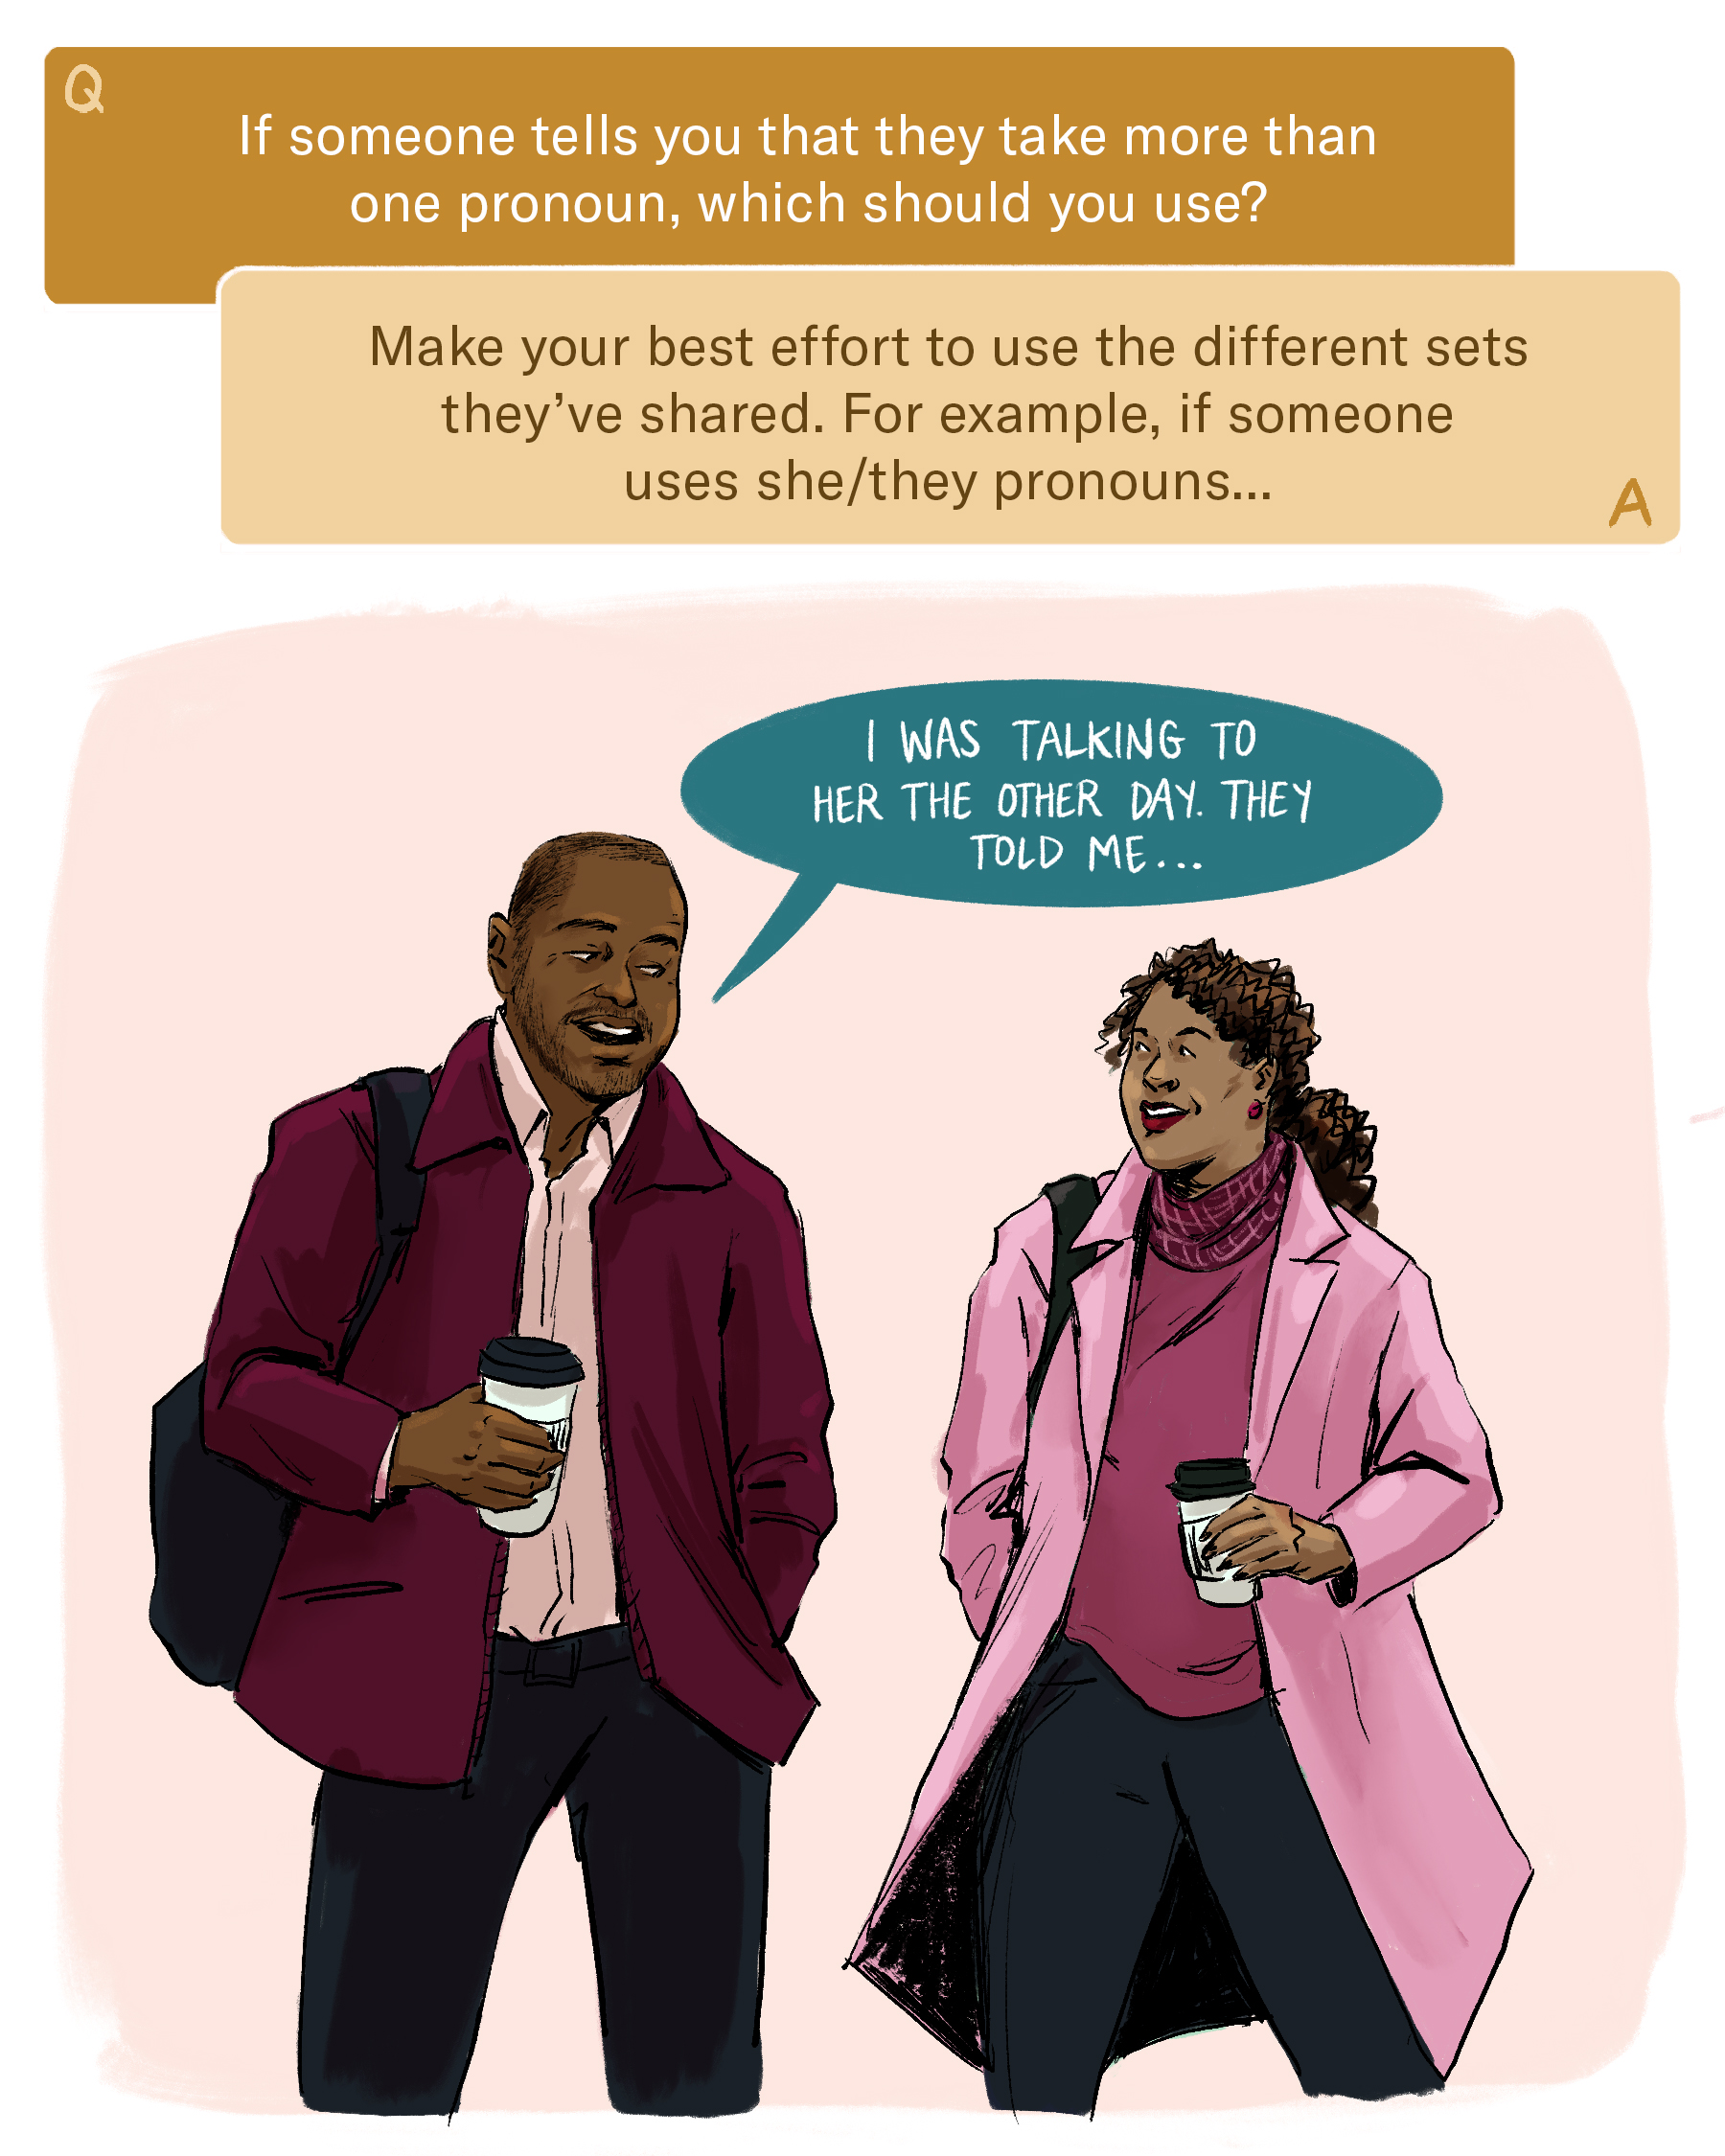 Cómo hablar sobre los pronombres en el trabajo: una guía visual